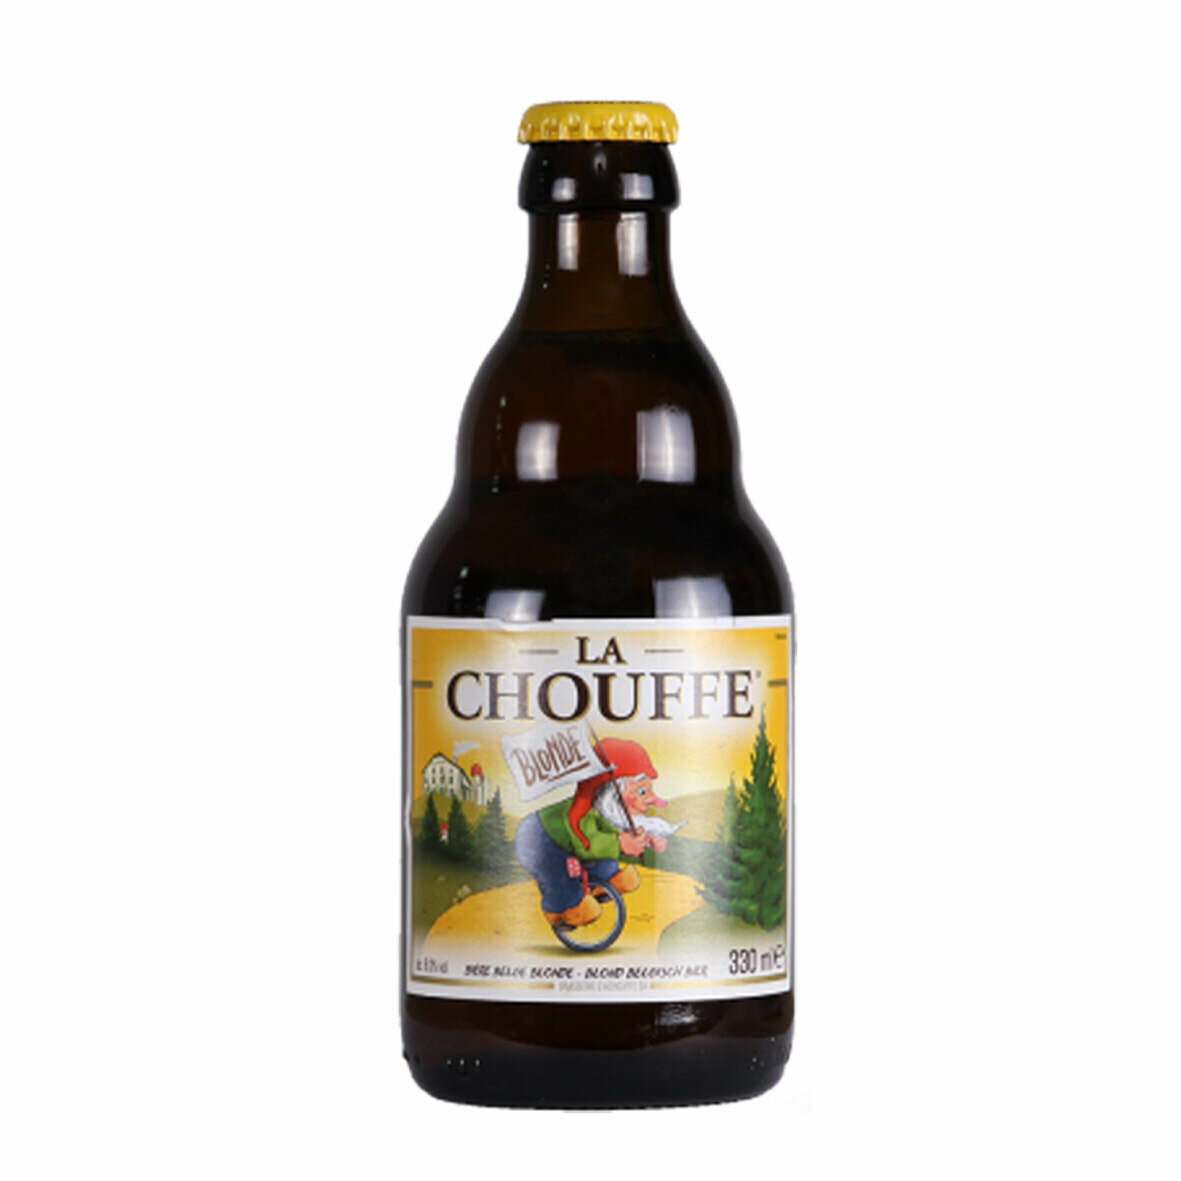 La Chouffe Blond 330ml Bottle